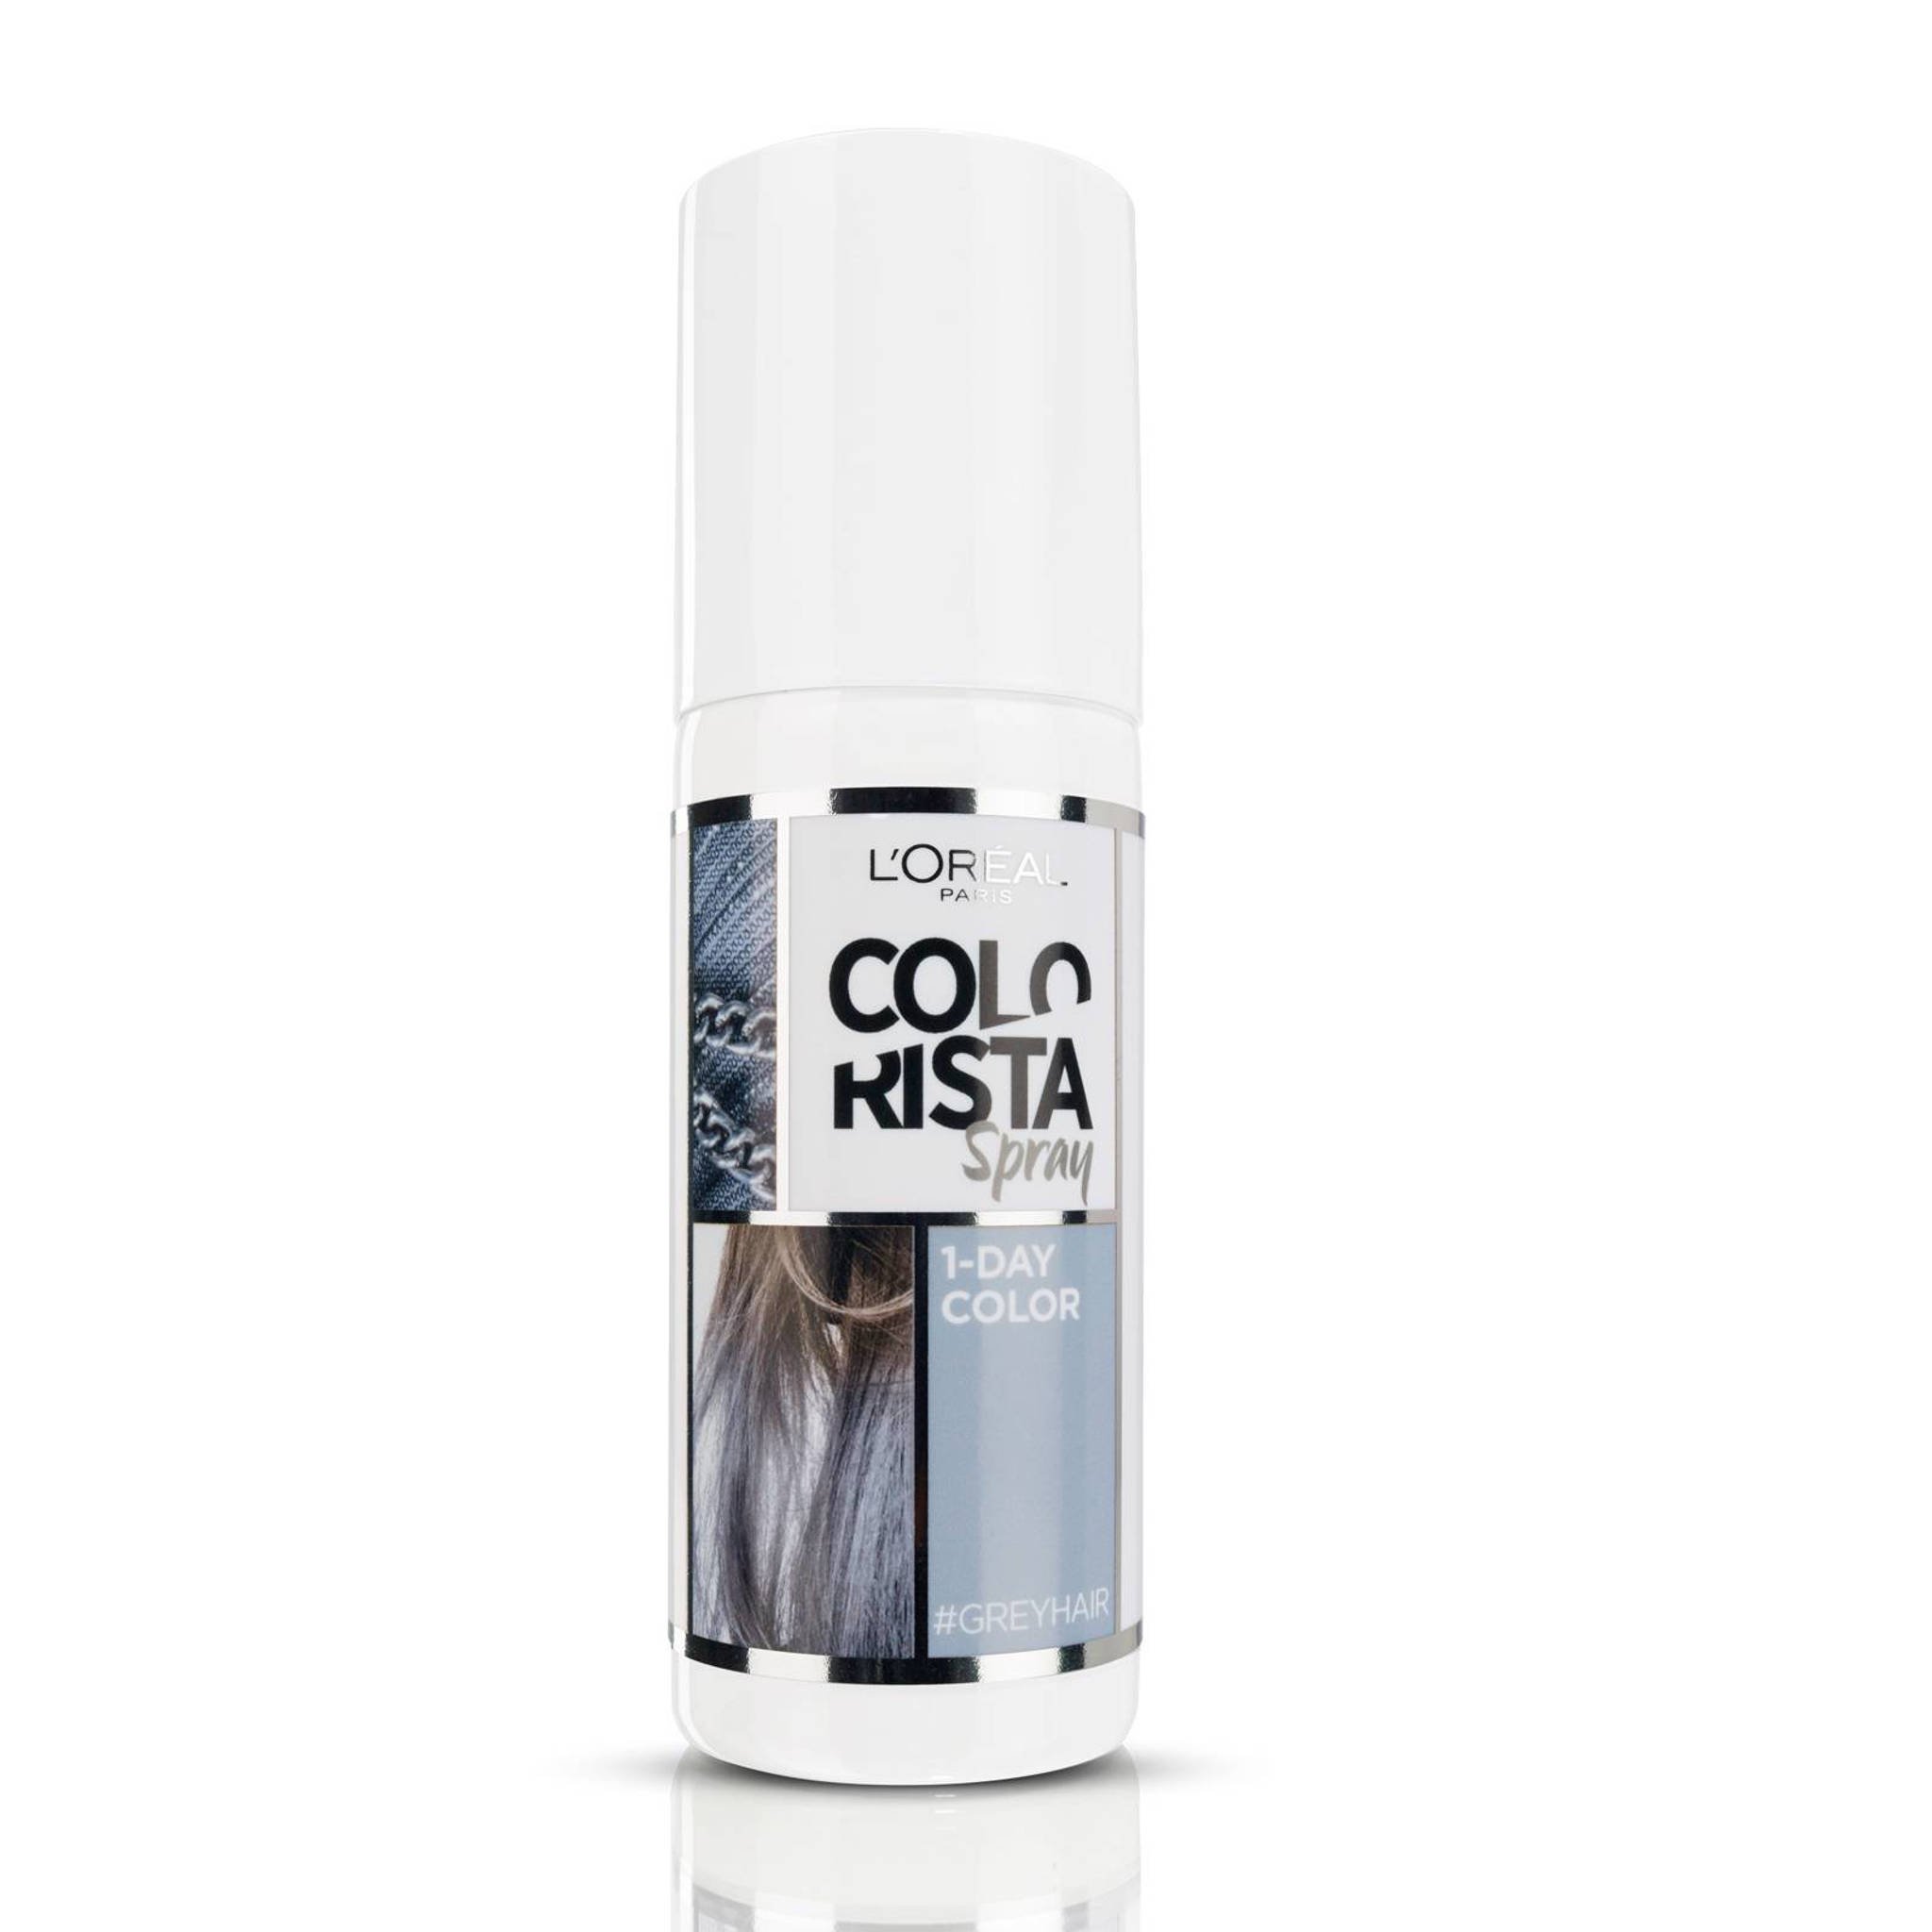 martelen Van storm Observatie L'Oréal Paris Coloration Colorista Spray 1 dag haarkleuring - grijs |  wehkamp